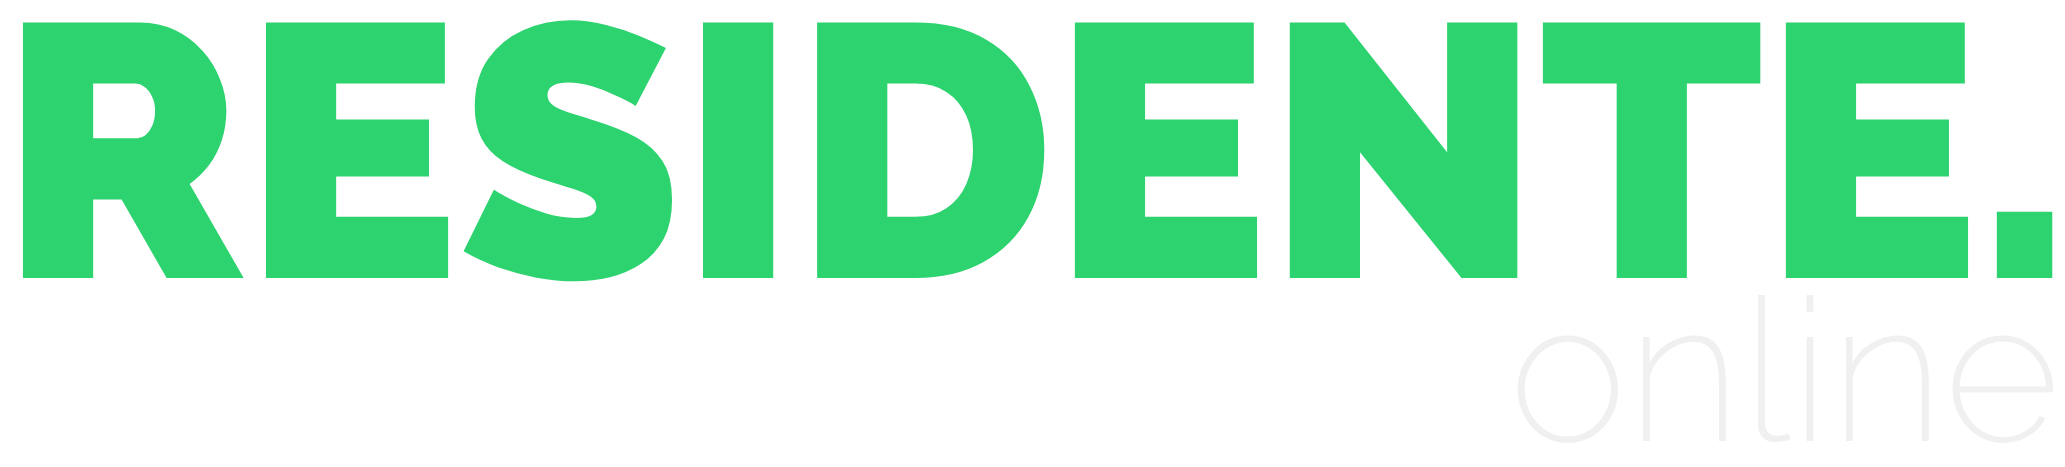 Residente Online Logo